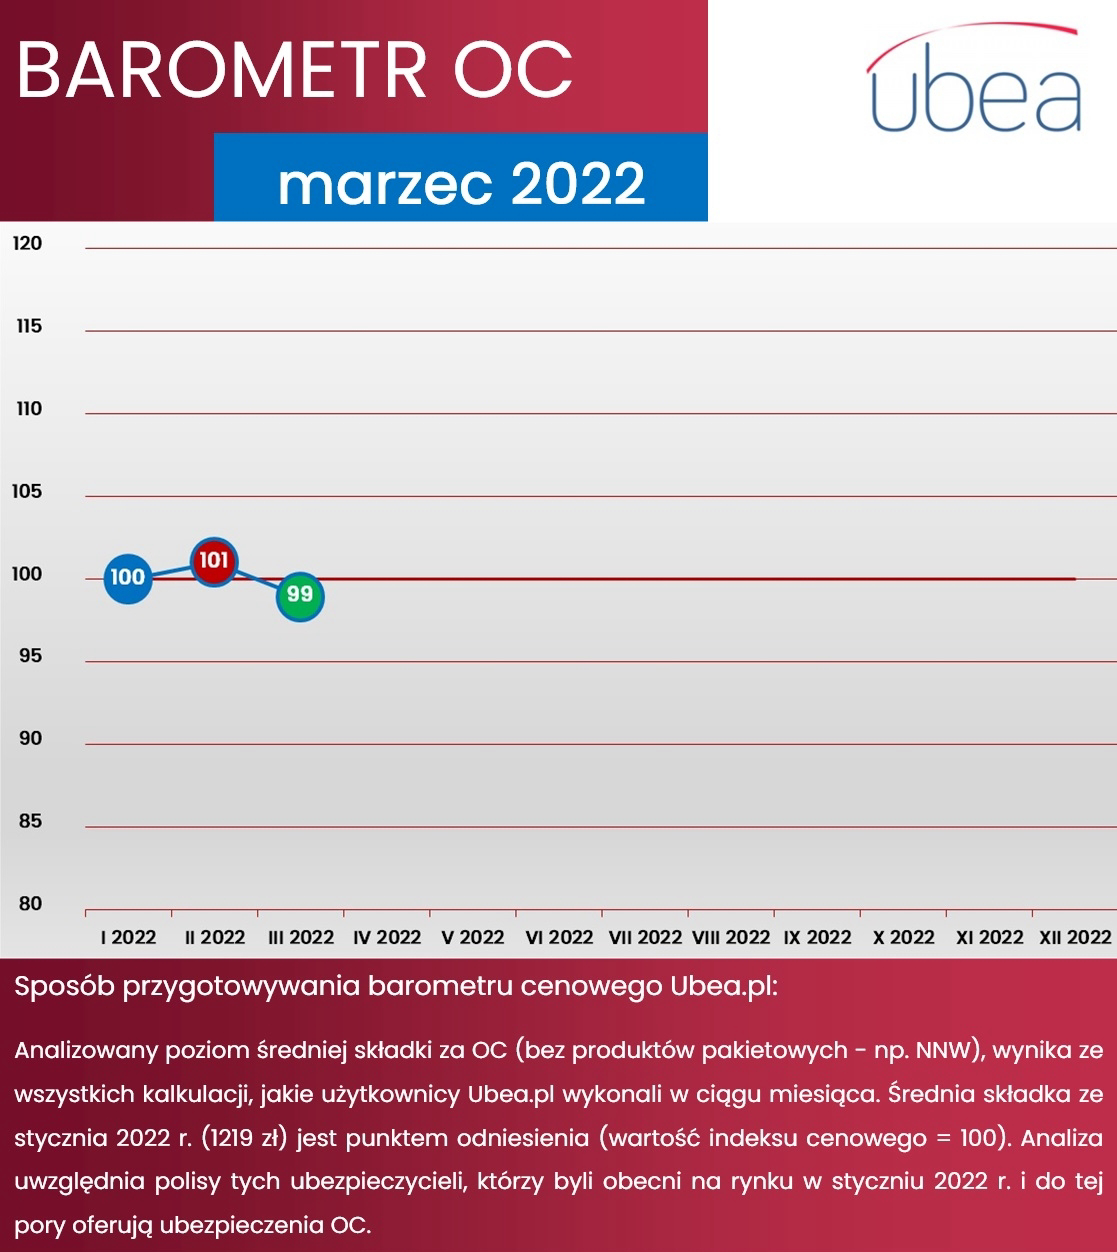 Barometr infografika marzec 2022